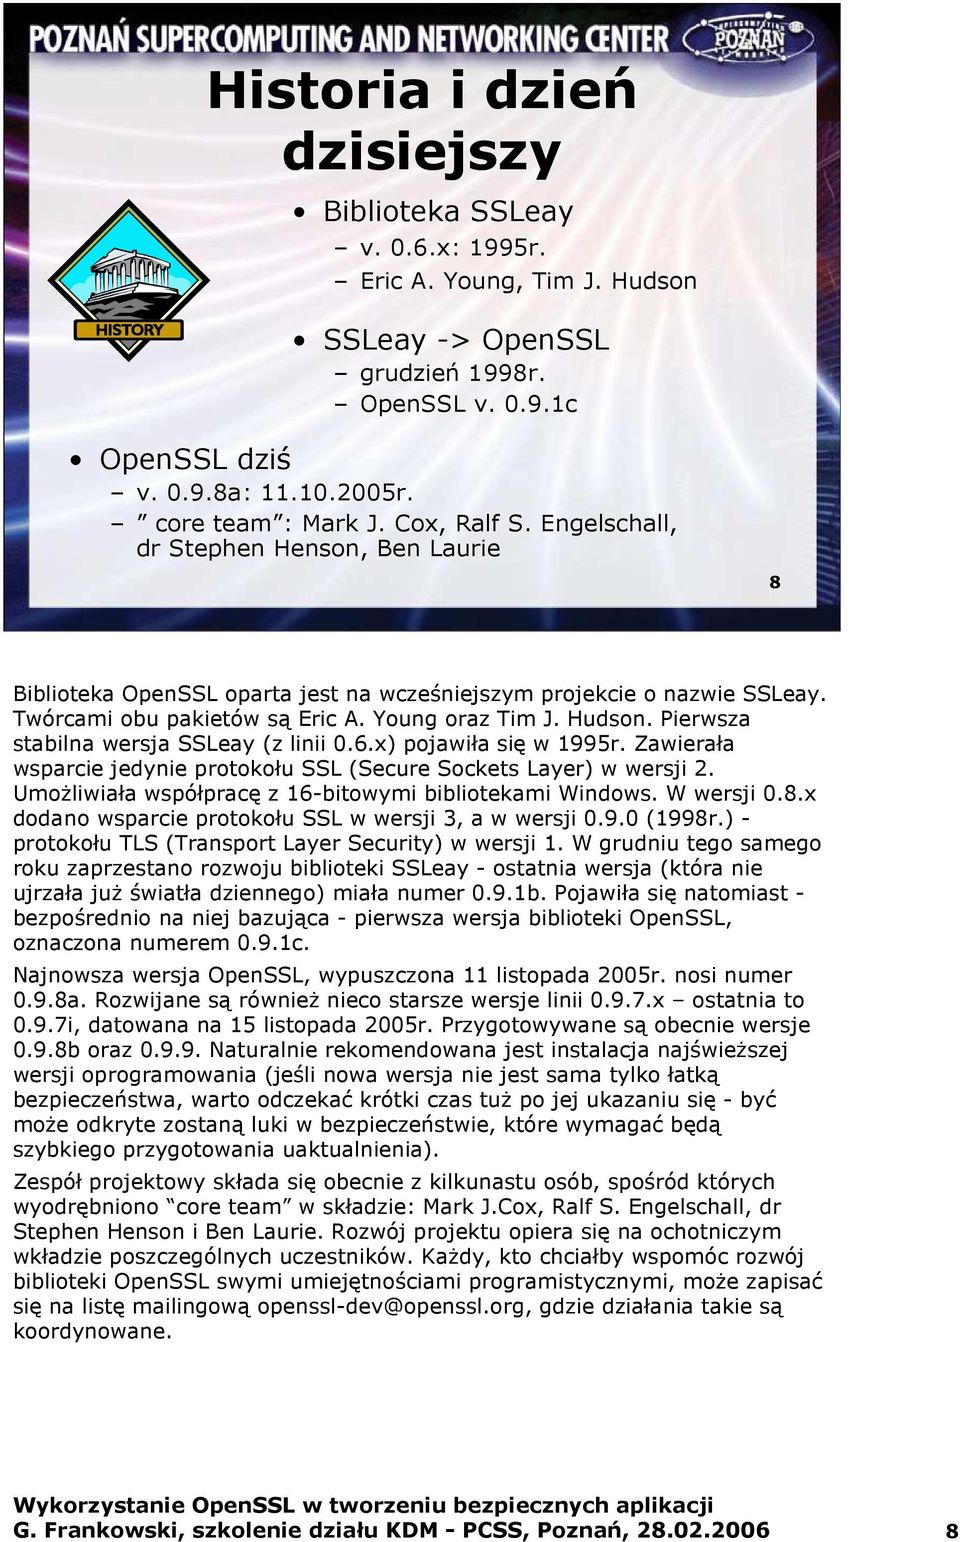 Pierwsza stabilna wersja SSLeay (z linii 0.6.x) pojawiła się w 1995r. Zawierała wsparcie jedynie protokołu SSL (Secure Sockets Layer) w wersji 2.